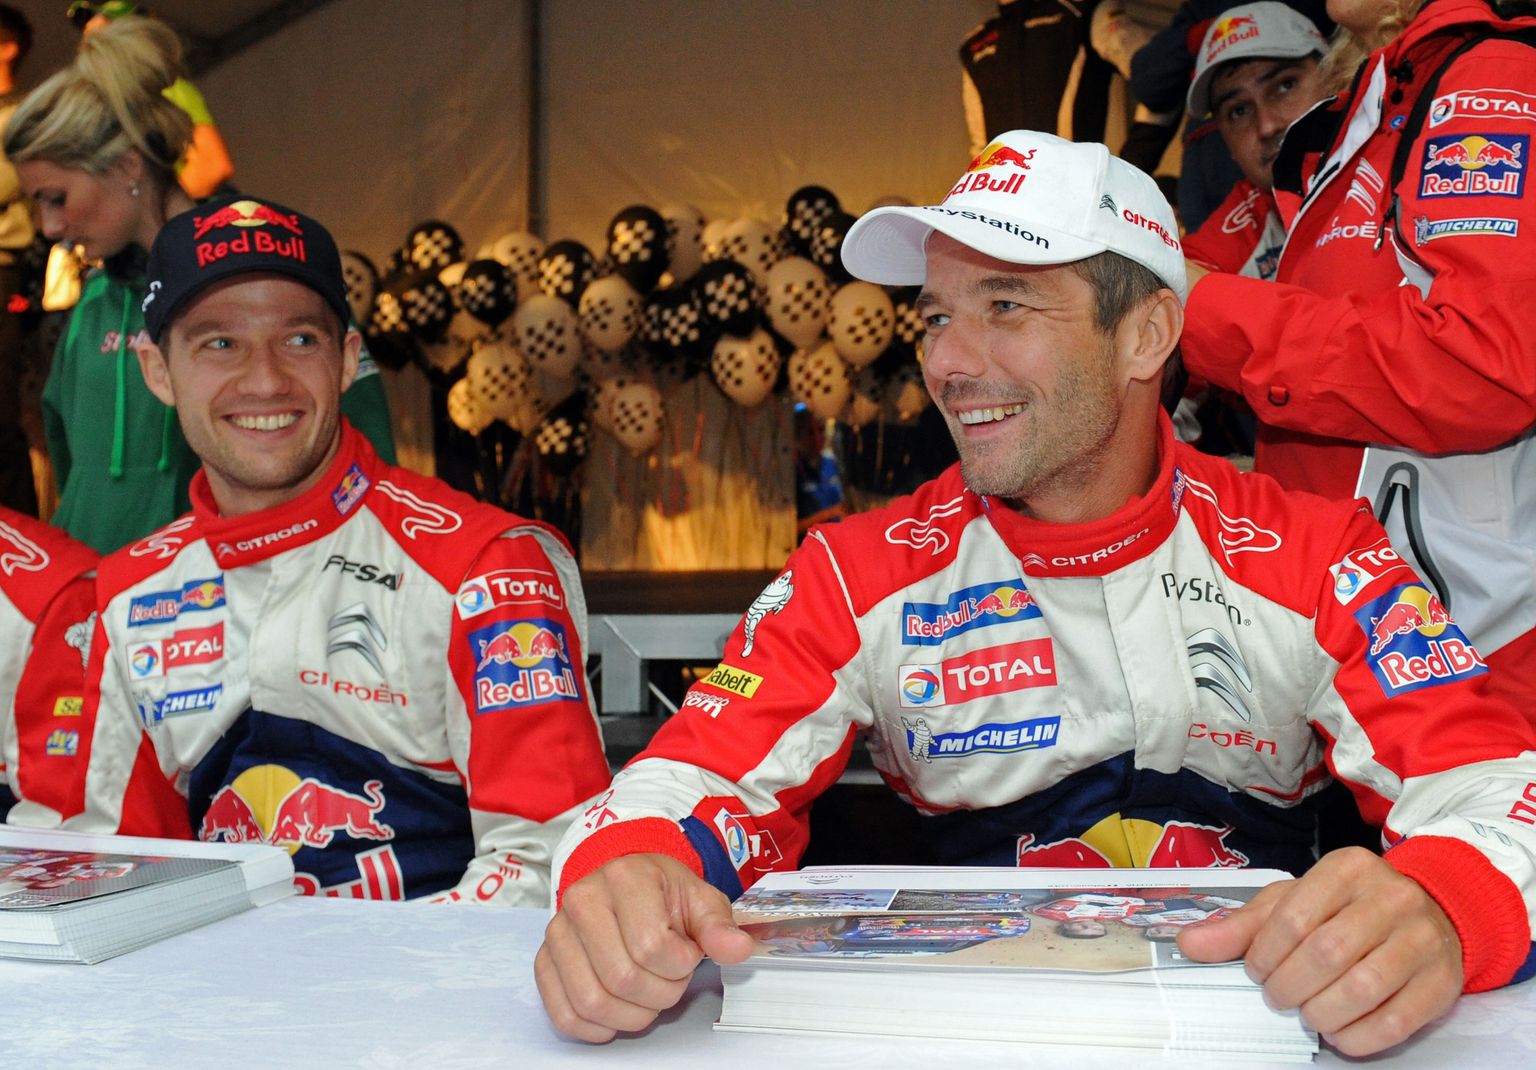 Sebastien Ogier (vasakul) ja Sebastien Loeb on kahekesi noppinud viimased 14 MM-tiitlit. Sel fotol on mehed 2011. aastal mälemad Citroëni värvides. Kas ajalugu võib veel kunagi korduda?